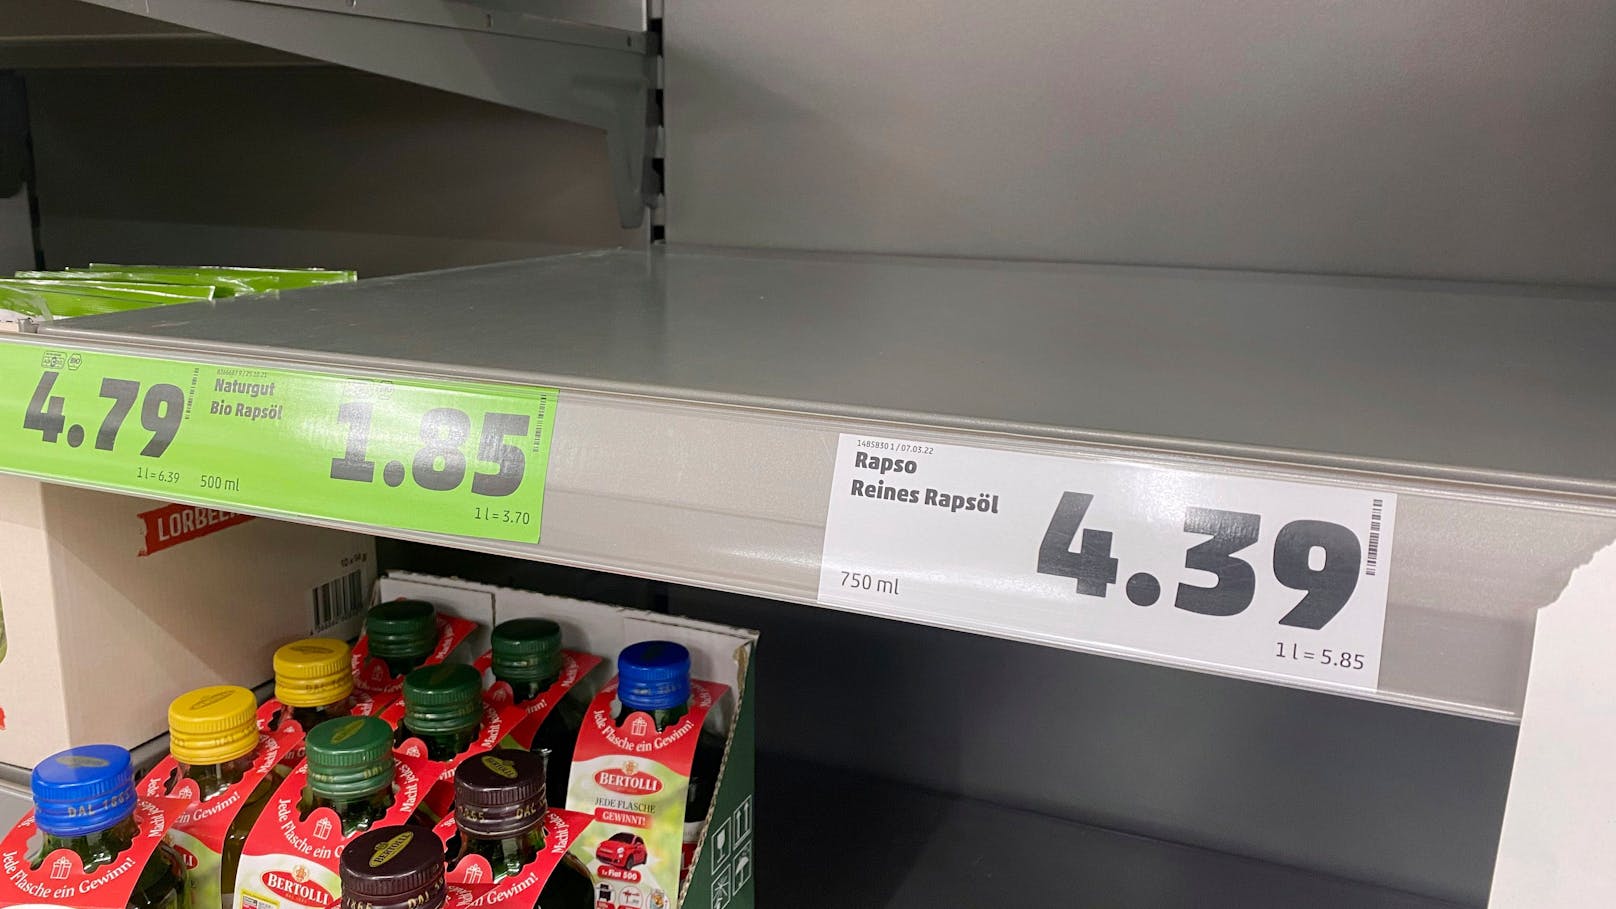 Gewisse Lebensmittel wie etwa Rapsöl sind in manchen Supermärkten komplett ausverkauft.